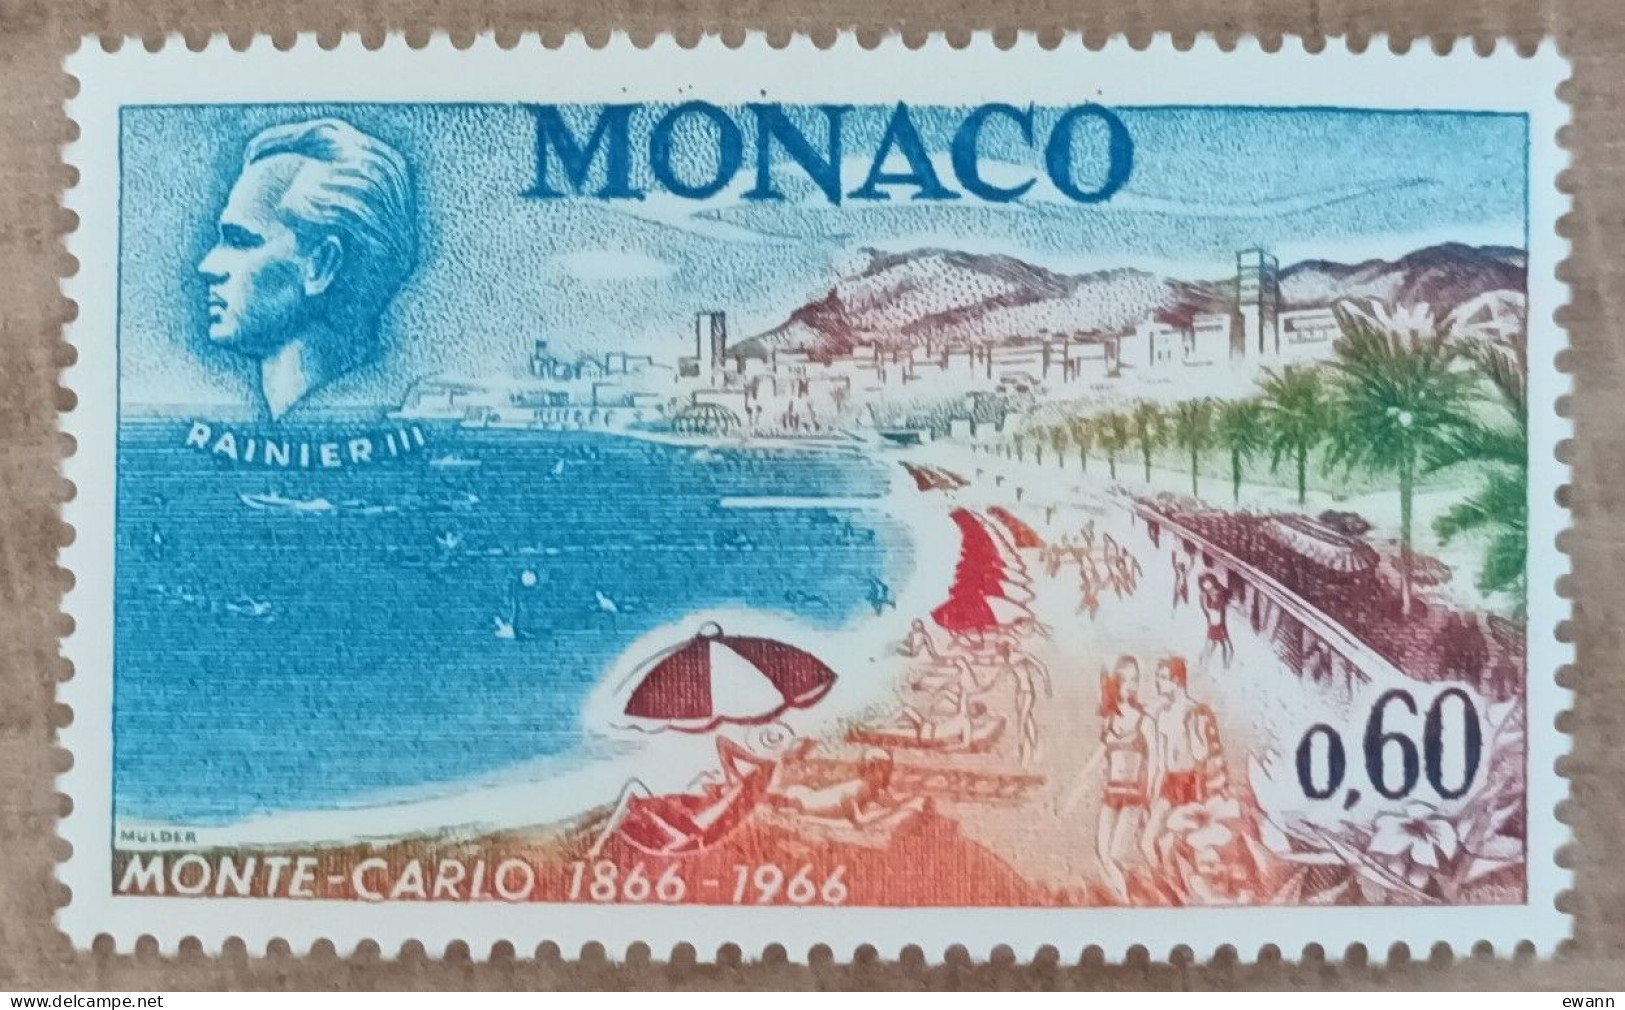 Monaco - YT N°694 - Centenaire De Monte Carlo - 1966 - Neuf - Nuevos